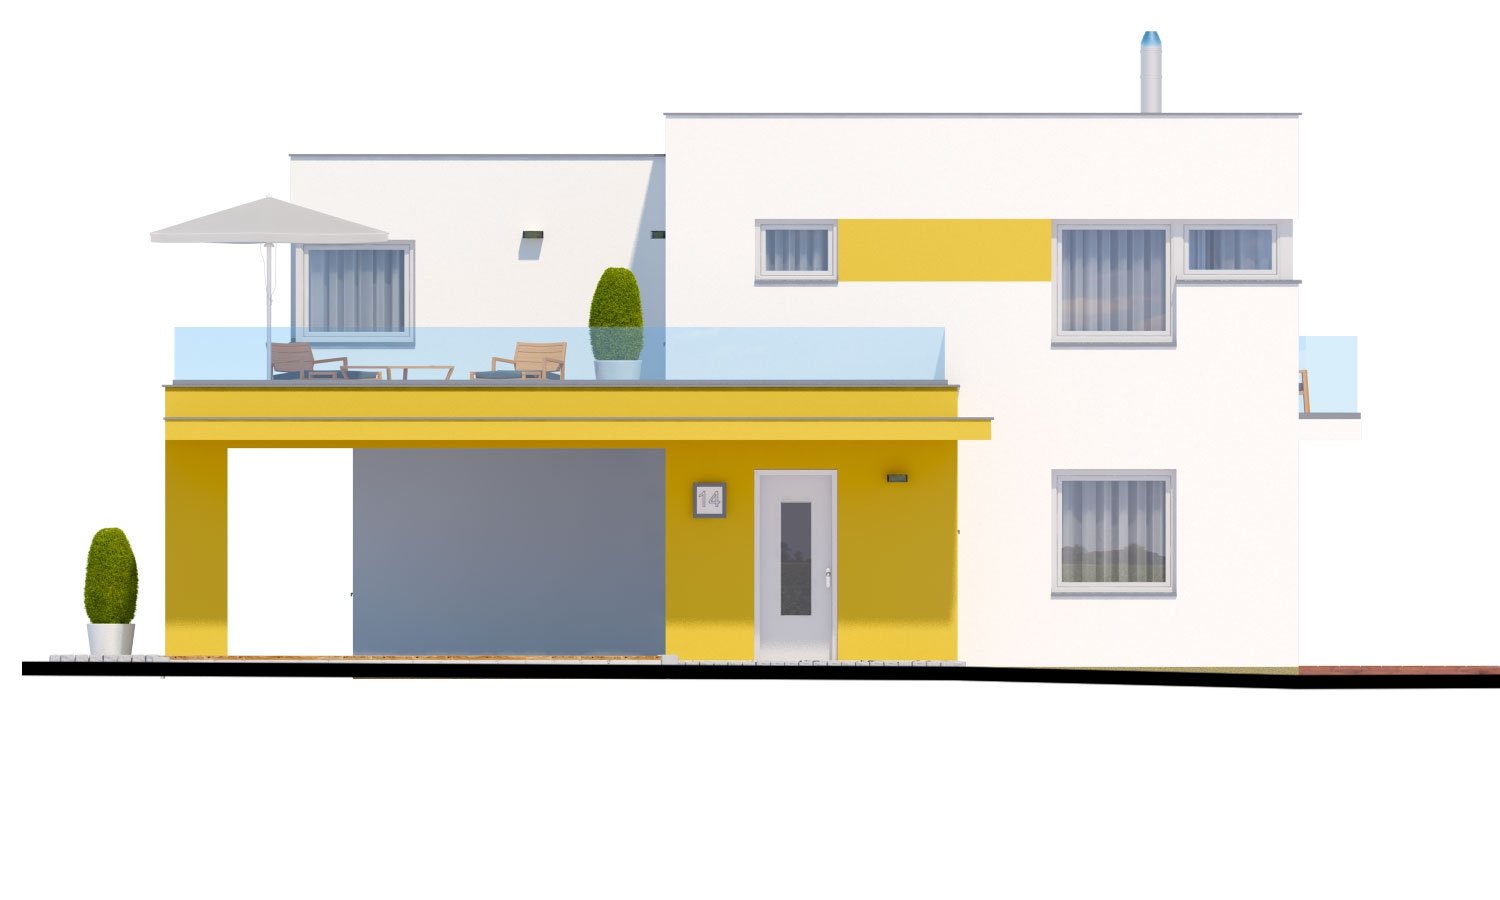 Pohľad 1. - Atypický projekt domu s krytým stáním pro dvě auta a pokojem v přízemí.